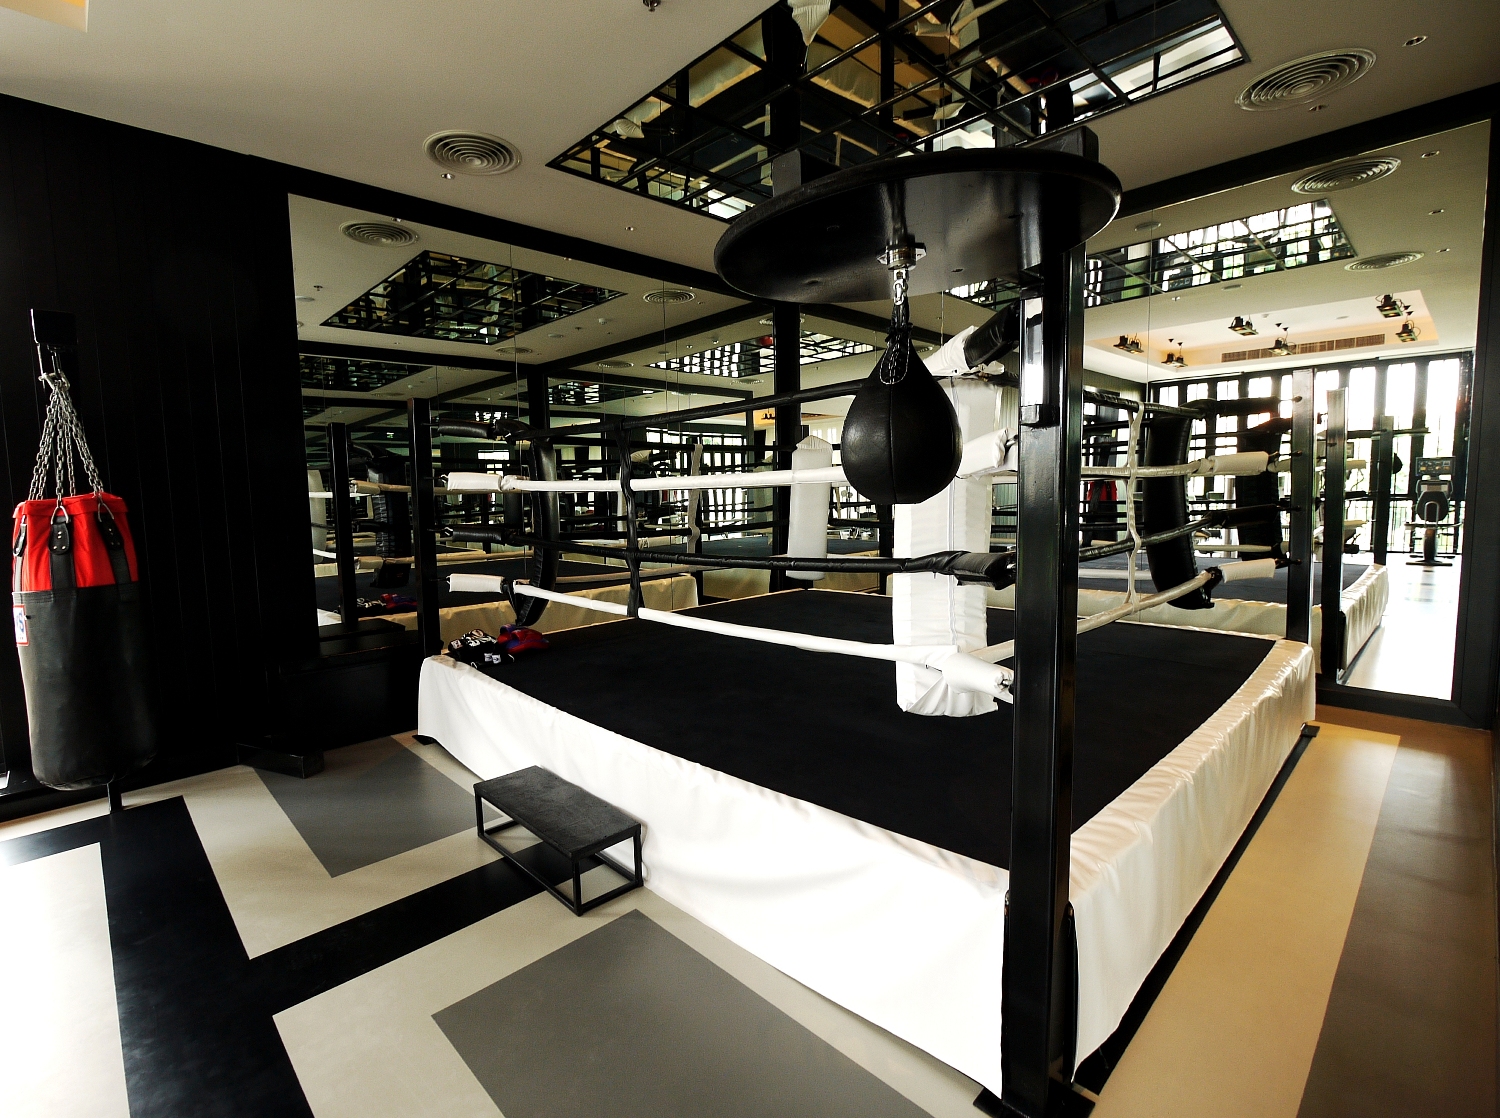 Gym - Muay Thai Boxing ring